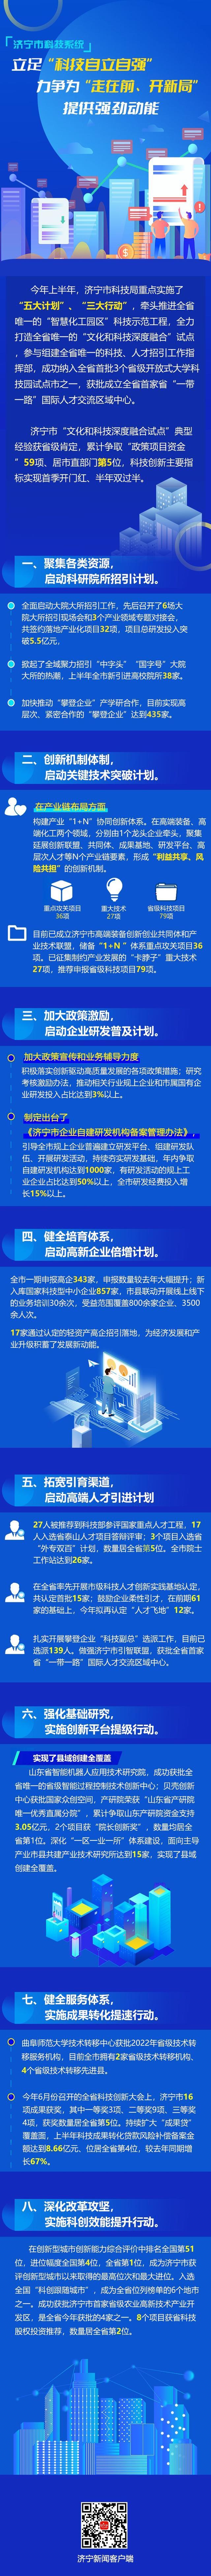 济宁新闻电脑版客户端济宁银行客户端下载电脑版